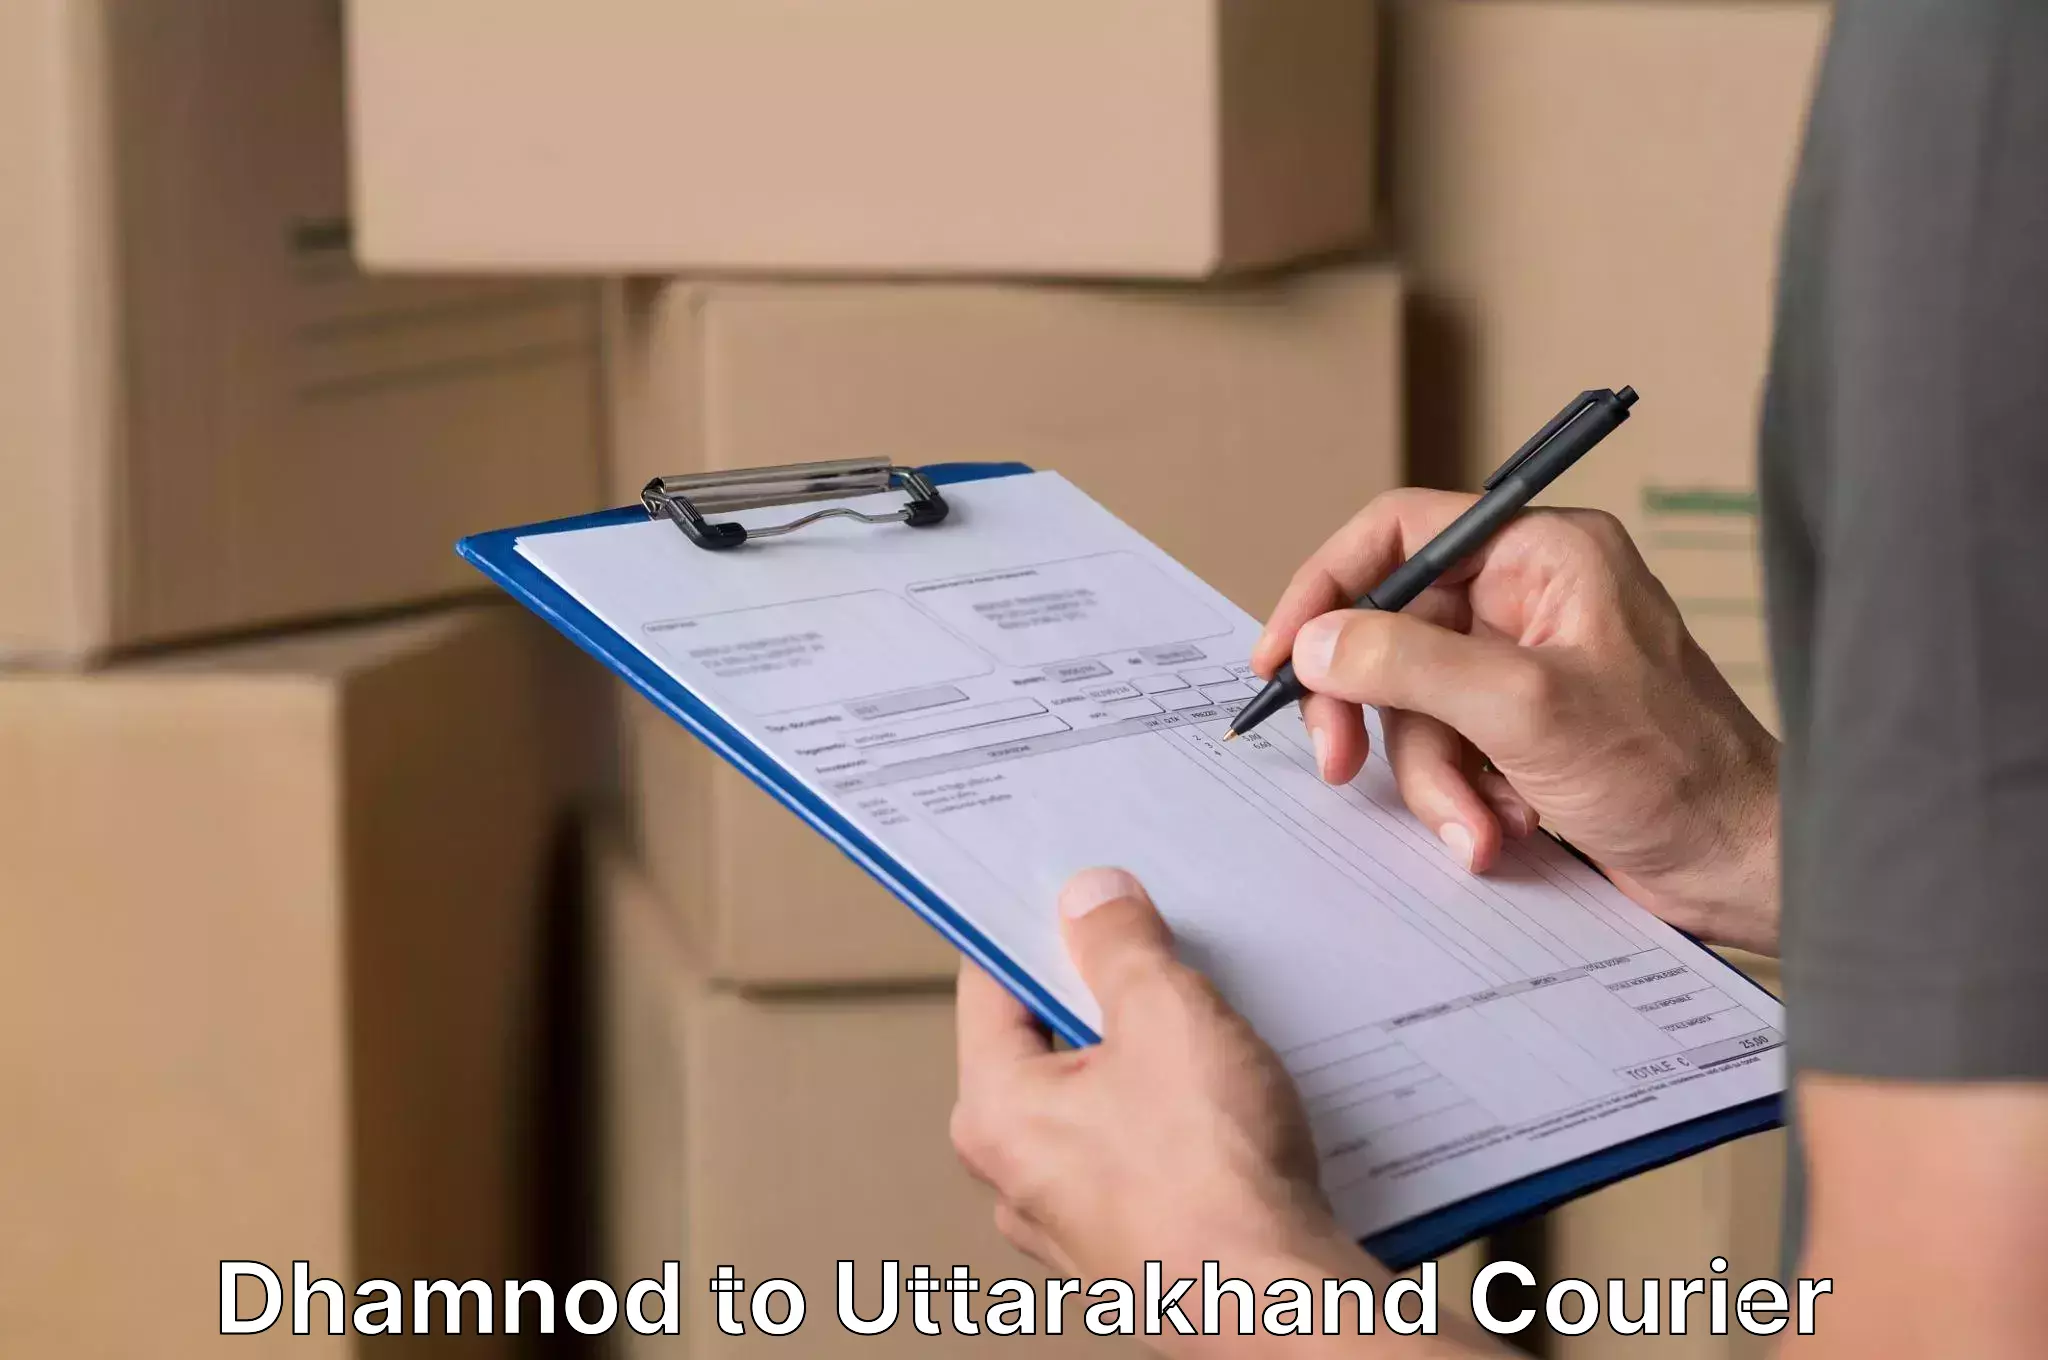 Expert furniture movers Dhamnod to Rishikesh